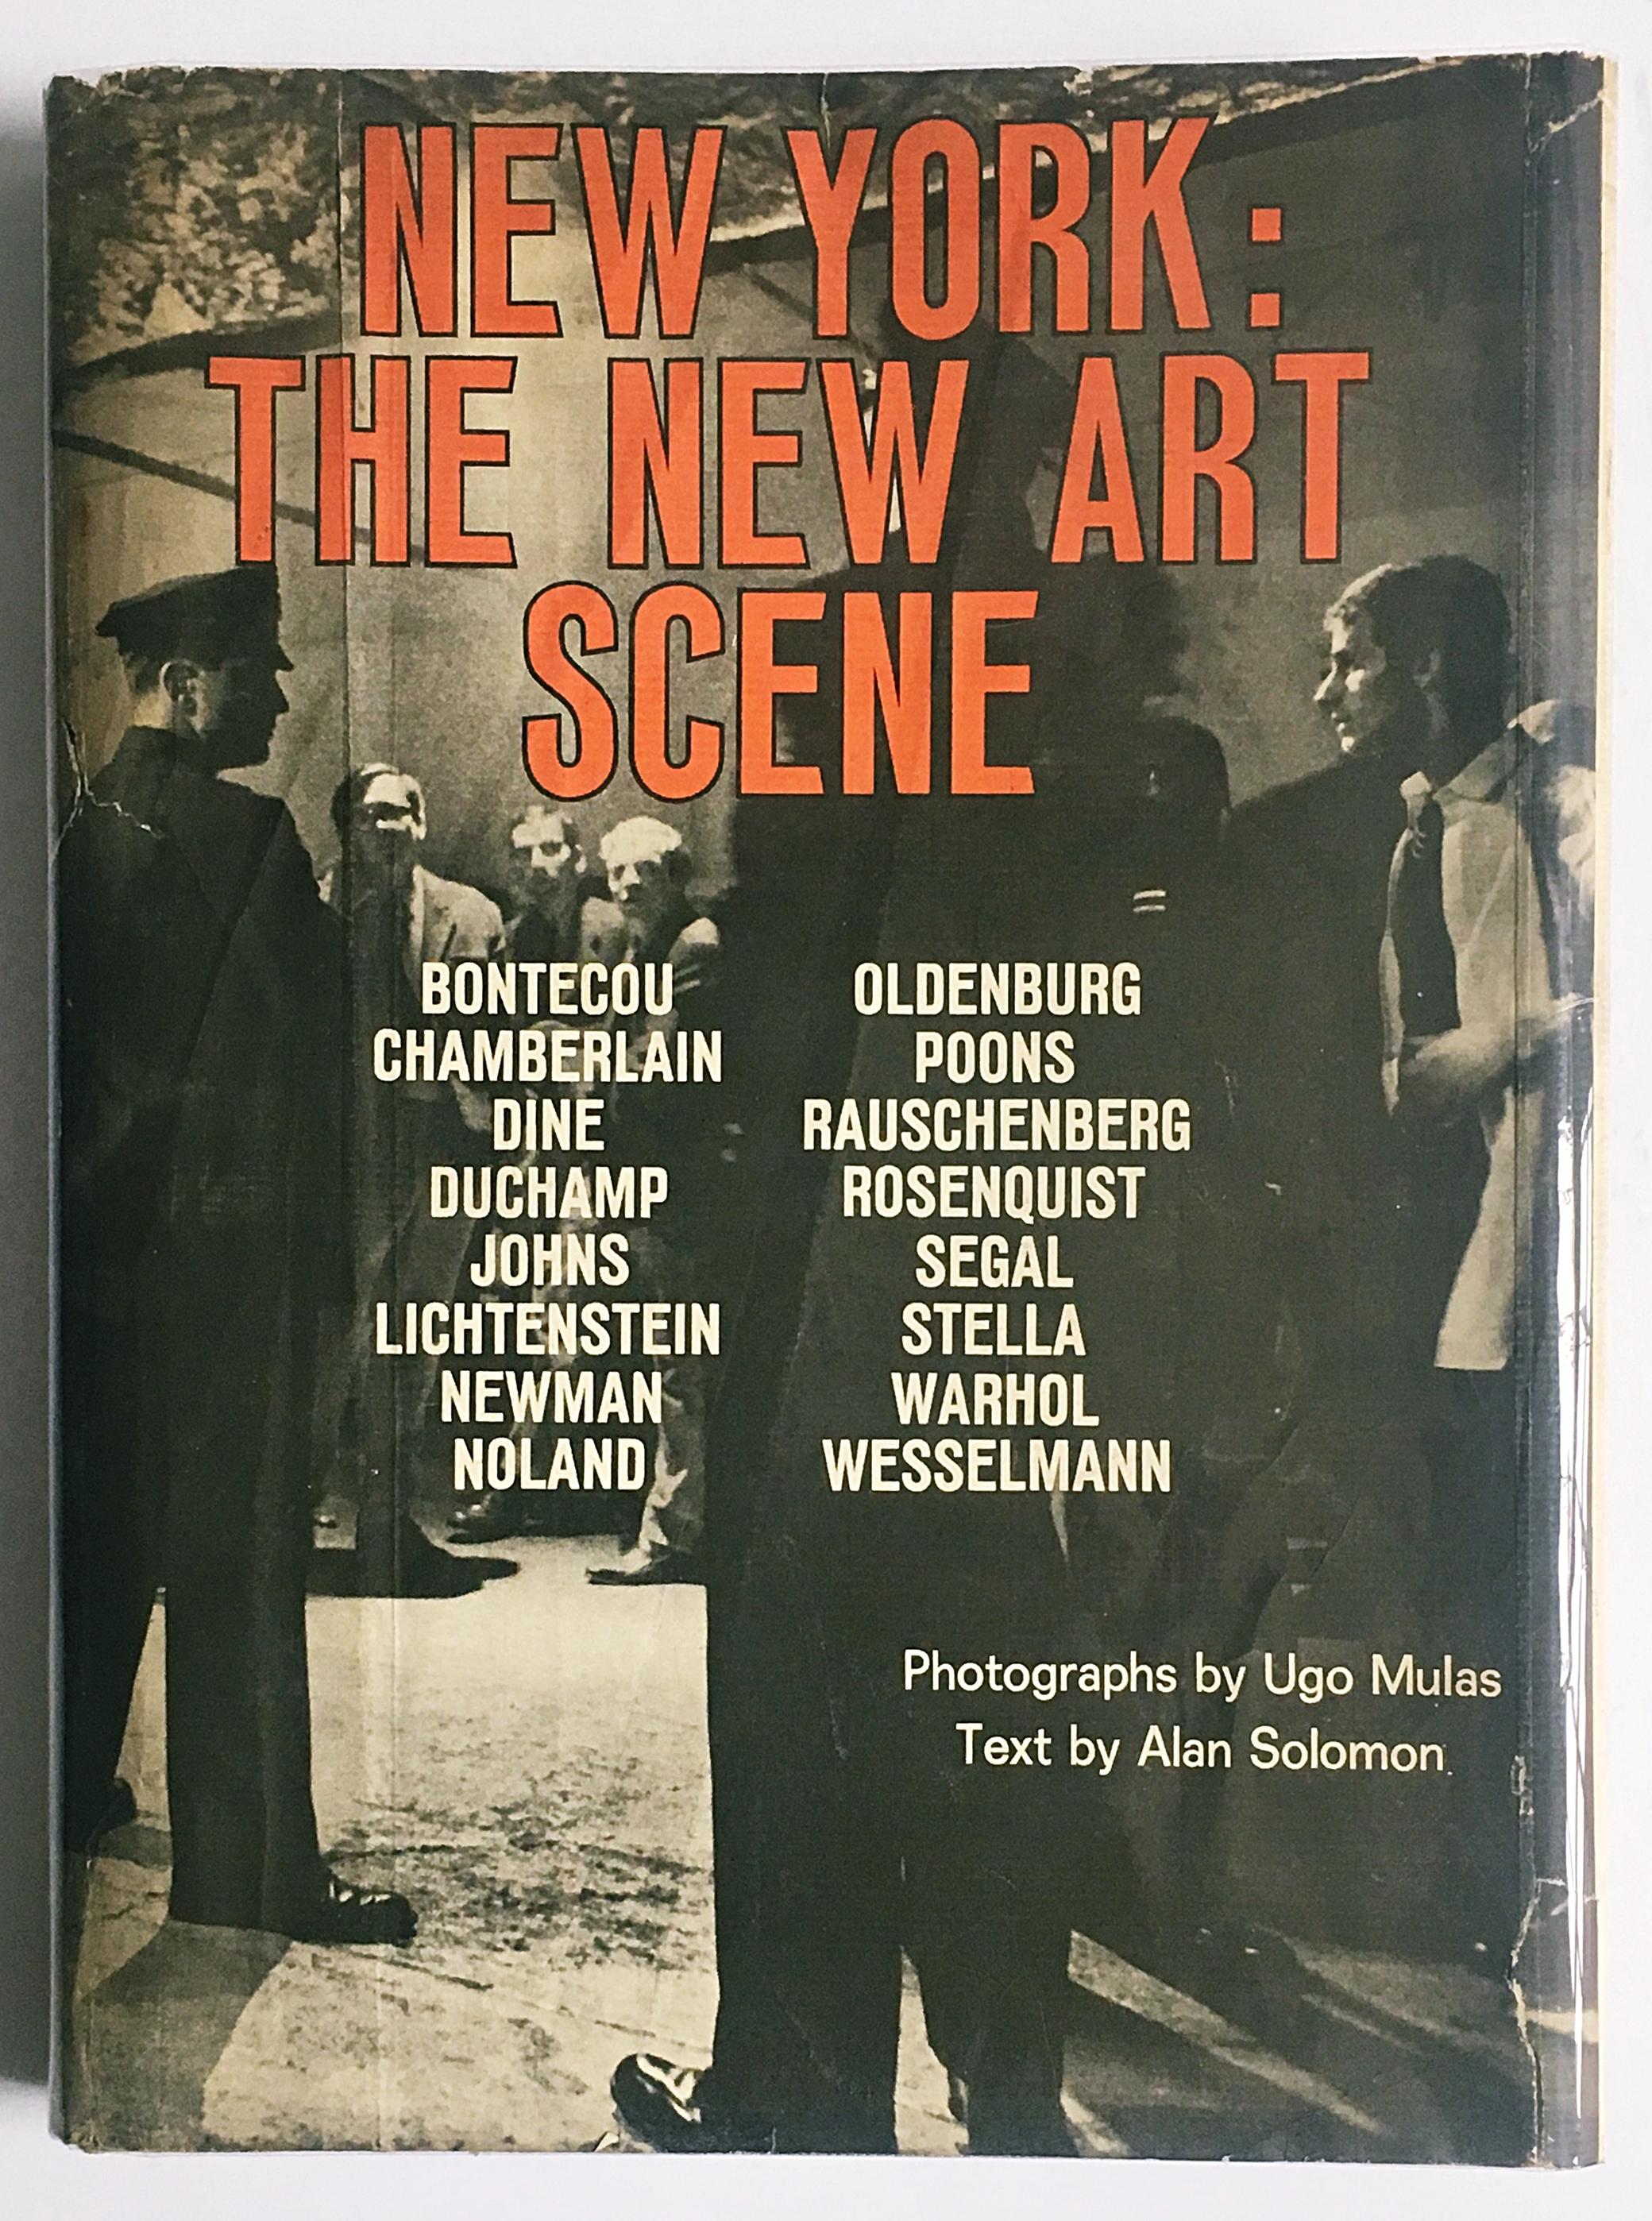 The New Art Scene ( ikonisches Buch, handsigniert von Frank Stella, Larry Poons & Dine)